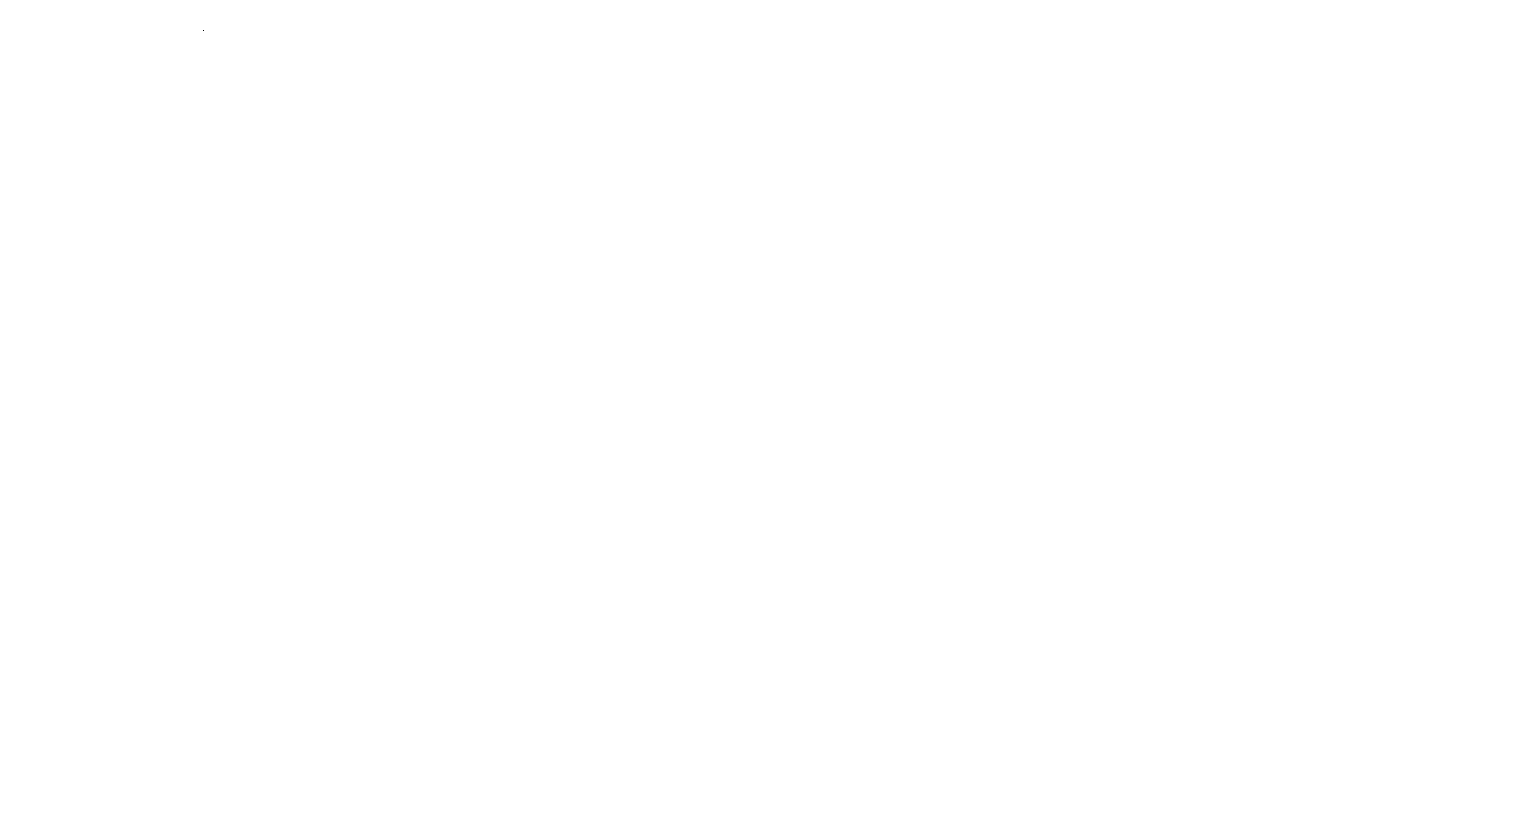 Автомобиль Toyota Avensis, 2007 г.в., г/н Е091ТВ35,  VIN SB1BR56L00E187955Собственник: Радкевич И.В.Место нахождение имущества: Вологодская область, г. Череповец, ул. Олимпийская, д. 30 Основание реализации имущества: Постановление судебного пристава-исполнителя о передаче арестованного имущества на торги Собственник имущества: Радкевич И.В. Порядок ознакомления с имуществом: Ознакомление с дополнительной информацией о предмете аукциона и иным вопросам осуществляется  по рабочим дням с 10:00 до 12:00 и с 15:00 до 17.00 с момента публикации информационного сообщения до даты окончания подачи заявок Обременения реализуемого имущества: С обременением имущества можно ознакомиться в файле Информационное сообщение Условия договора, заключаемого по результатам торгов: Продавец заключает договор купли-продажи имущества с лицом, выигравшим публичные торги, путем подписания договора при помощи ЭЦП в электронной форме и на бумажном носителе по адресу нахождения продавца: г. Вологда, ул. Пушкинская, д.25, каб.506 Порядок и сроки уплаты покупной цены по итогам проведения торгов: Лицо, выигравшее торги, должно внести в течение пяти дней после их окончания сумму, за которую данным лицом куплено арестованное имущество (покупную цену), за вычетом ранее внесенного задатка на счет продавца.    Реквизиты для внесения оставшейся суммы: Получатель: УФК по Вологодской области (ТУ Росимущества в Вологодской области л/с 05301A27050) ИНН 3525237735, КПП 352501001 р/с 03212643000000013000 ОТДЕЛЕНИЕ ВОЛОГДА//УФК по Вологодской области г. Вологда БИК 011909101 КБК 16700000000000000000 Вологодская область, г. Череповец, ул. Олимпийская, д. 30 Информация по предыдущим торгам: 21000001250000000197 Форма собственности: Иная собственность Государственный регистрационный знак: Е091ТВ35 Год выпуска: 2007 VIN номер: SB1BR56L00E187955 Вид транспорта: Легковой Марка: Toyota Модель: Avensis   